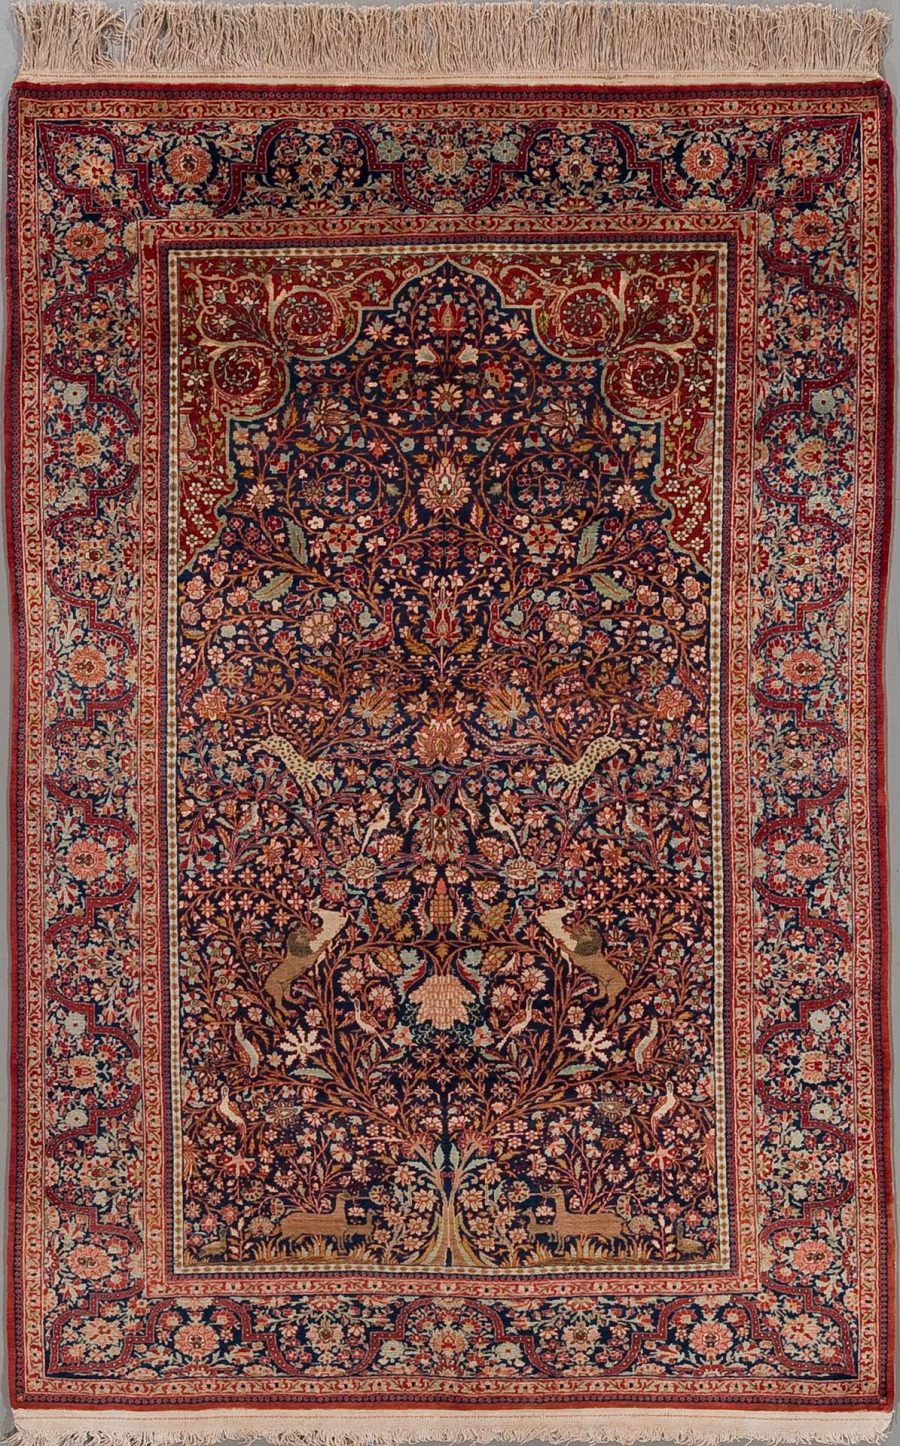 Detailreich geknüpfter persischer Teppich in dunklen und warmen Farben mit komplexen floralen Mustern und zentralem Medaillon auf dunkelblauem Grund, umgeben von Bordüren in Rot- und Beigetönen.